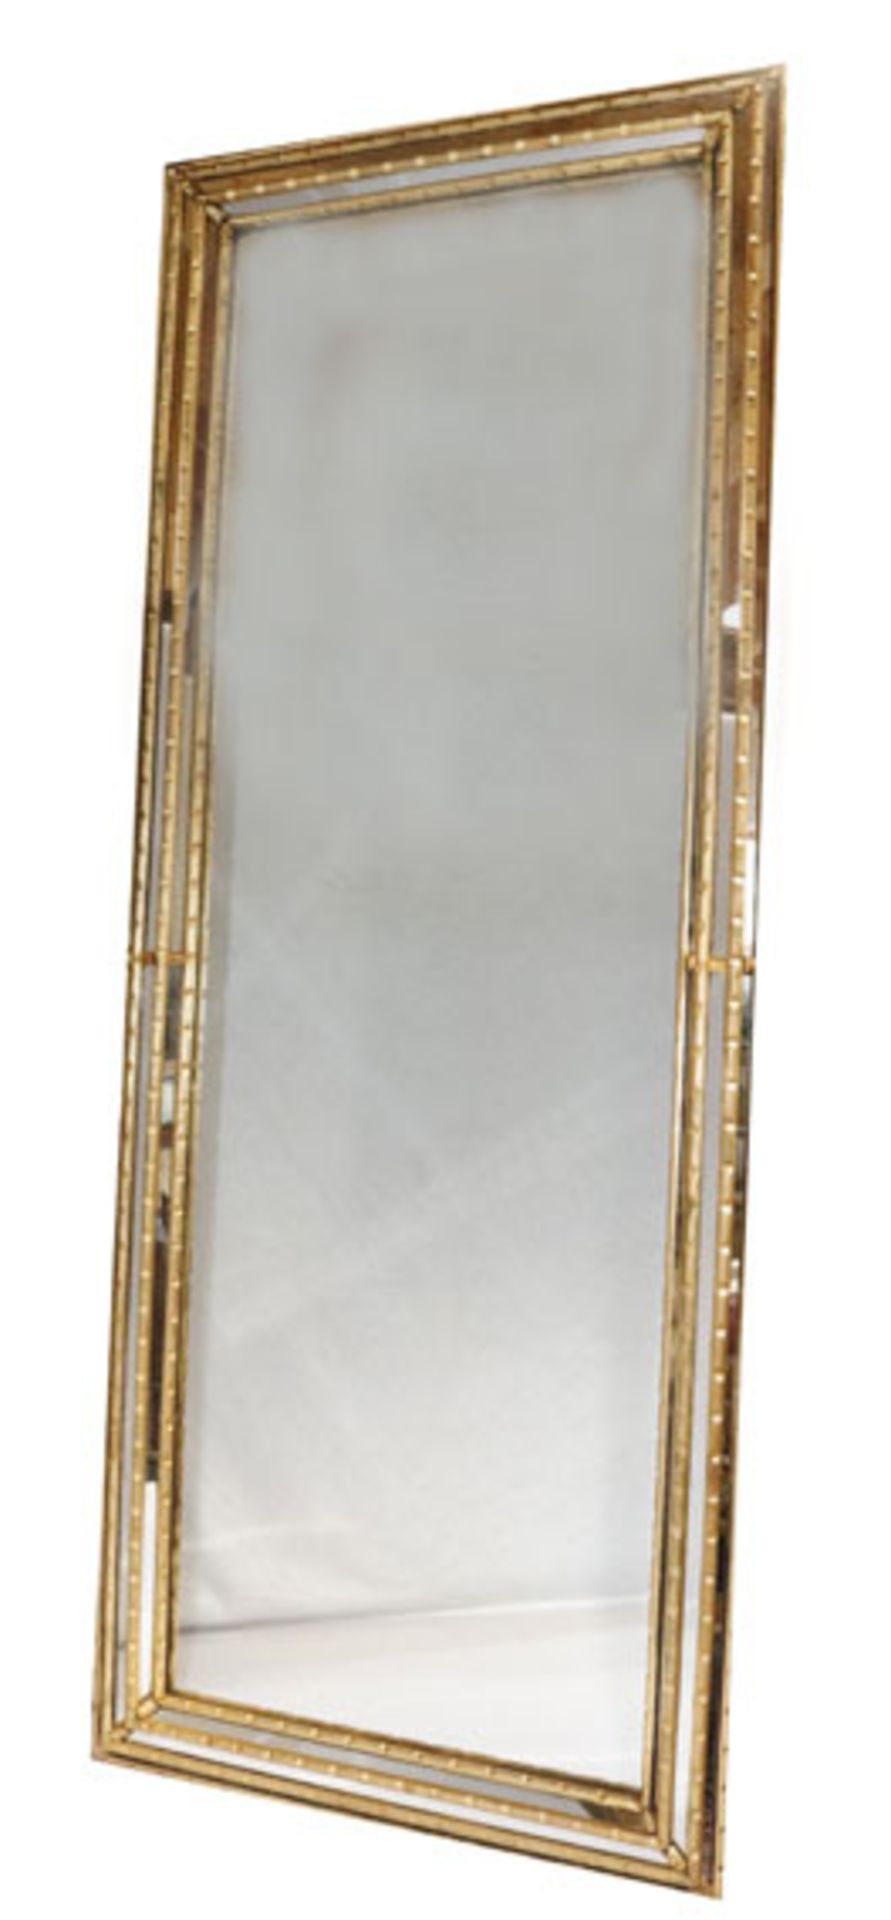 Wandspiegel in teils verspiegeltem Rahmen, teils berieben, incl.Rahmen 151 cm x 60 cm, Versand per